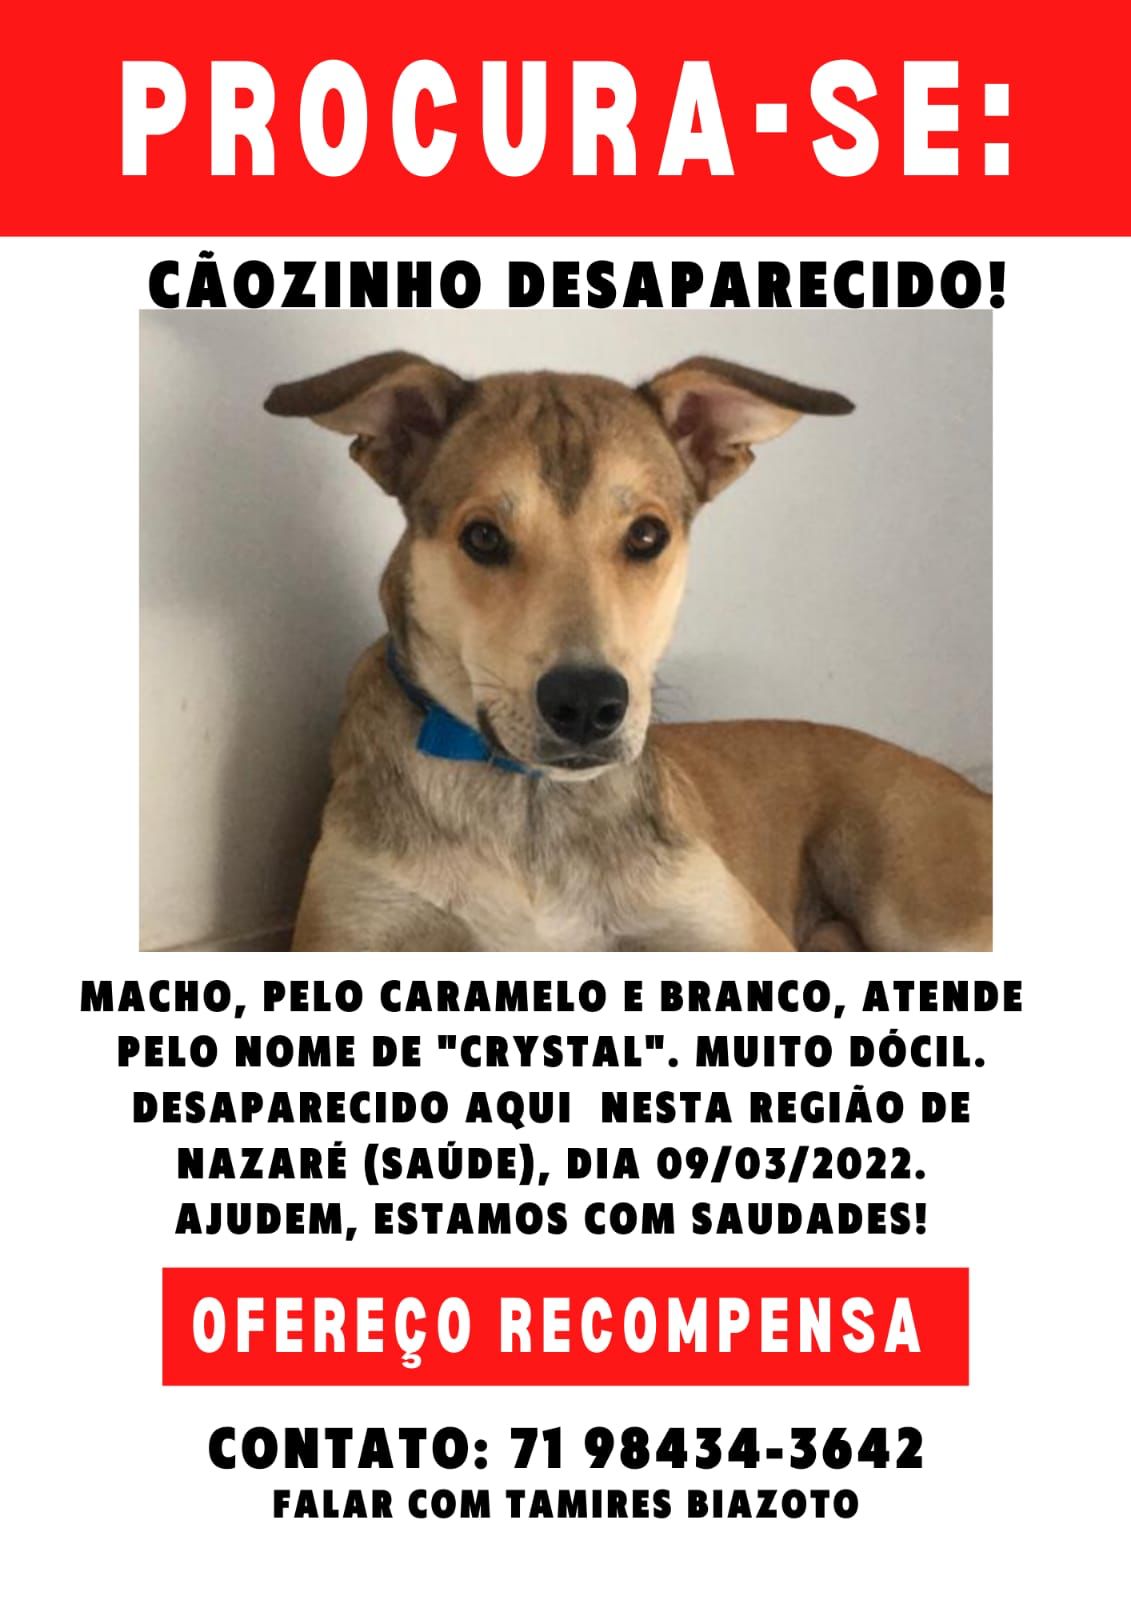 Tutora pede ajuda para achar cachorro desaparecido em bairro de Salvador; saiba mais